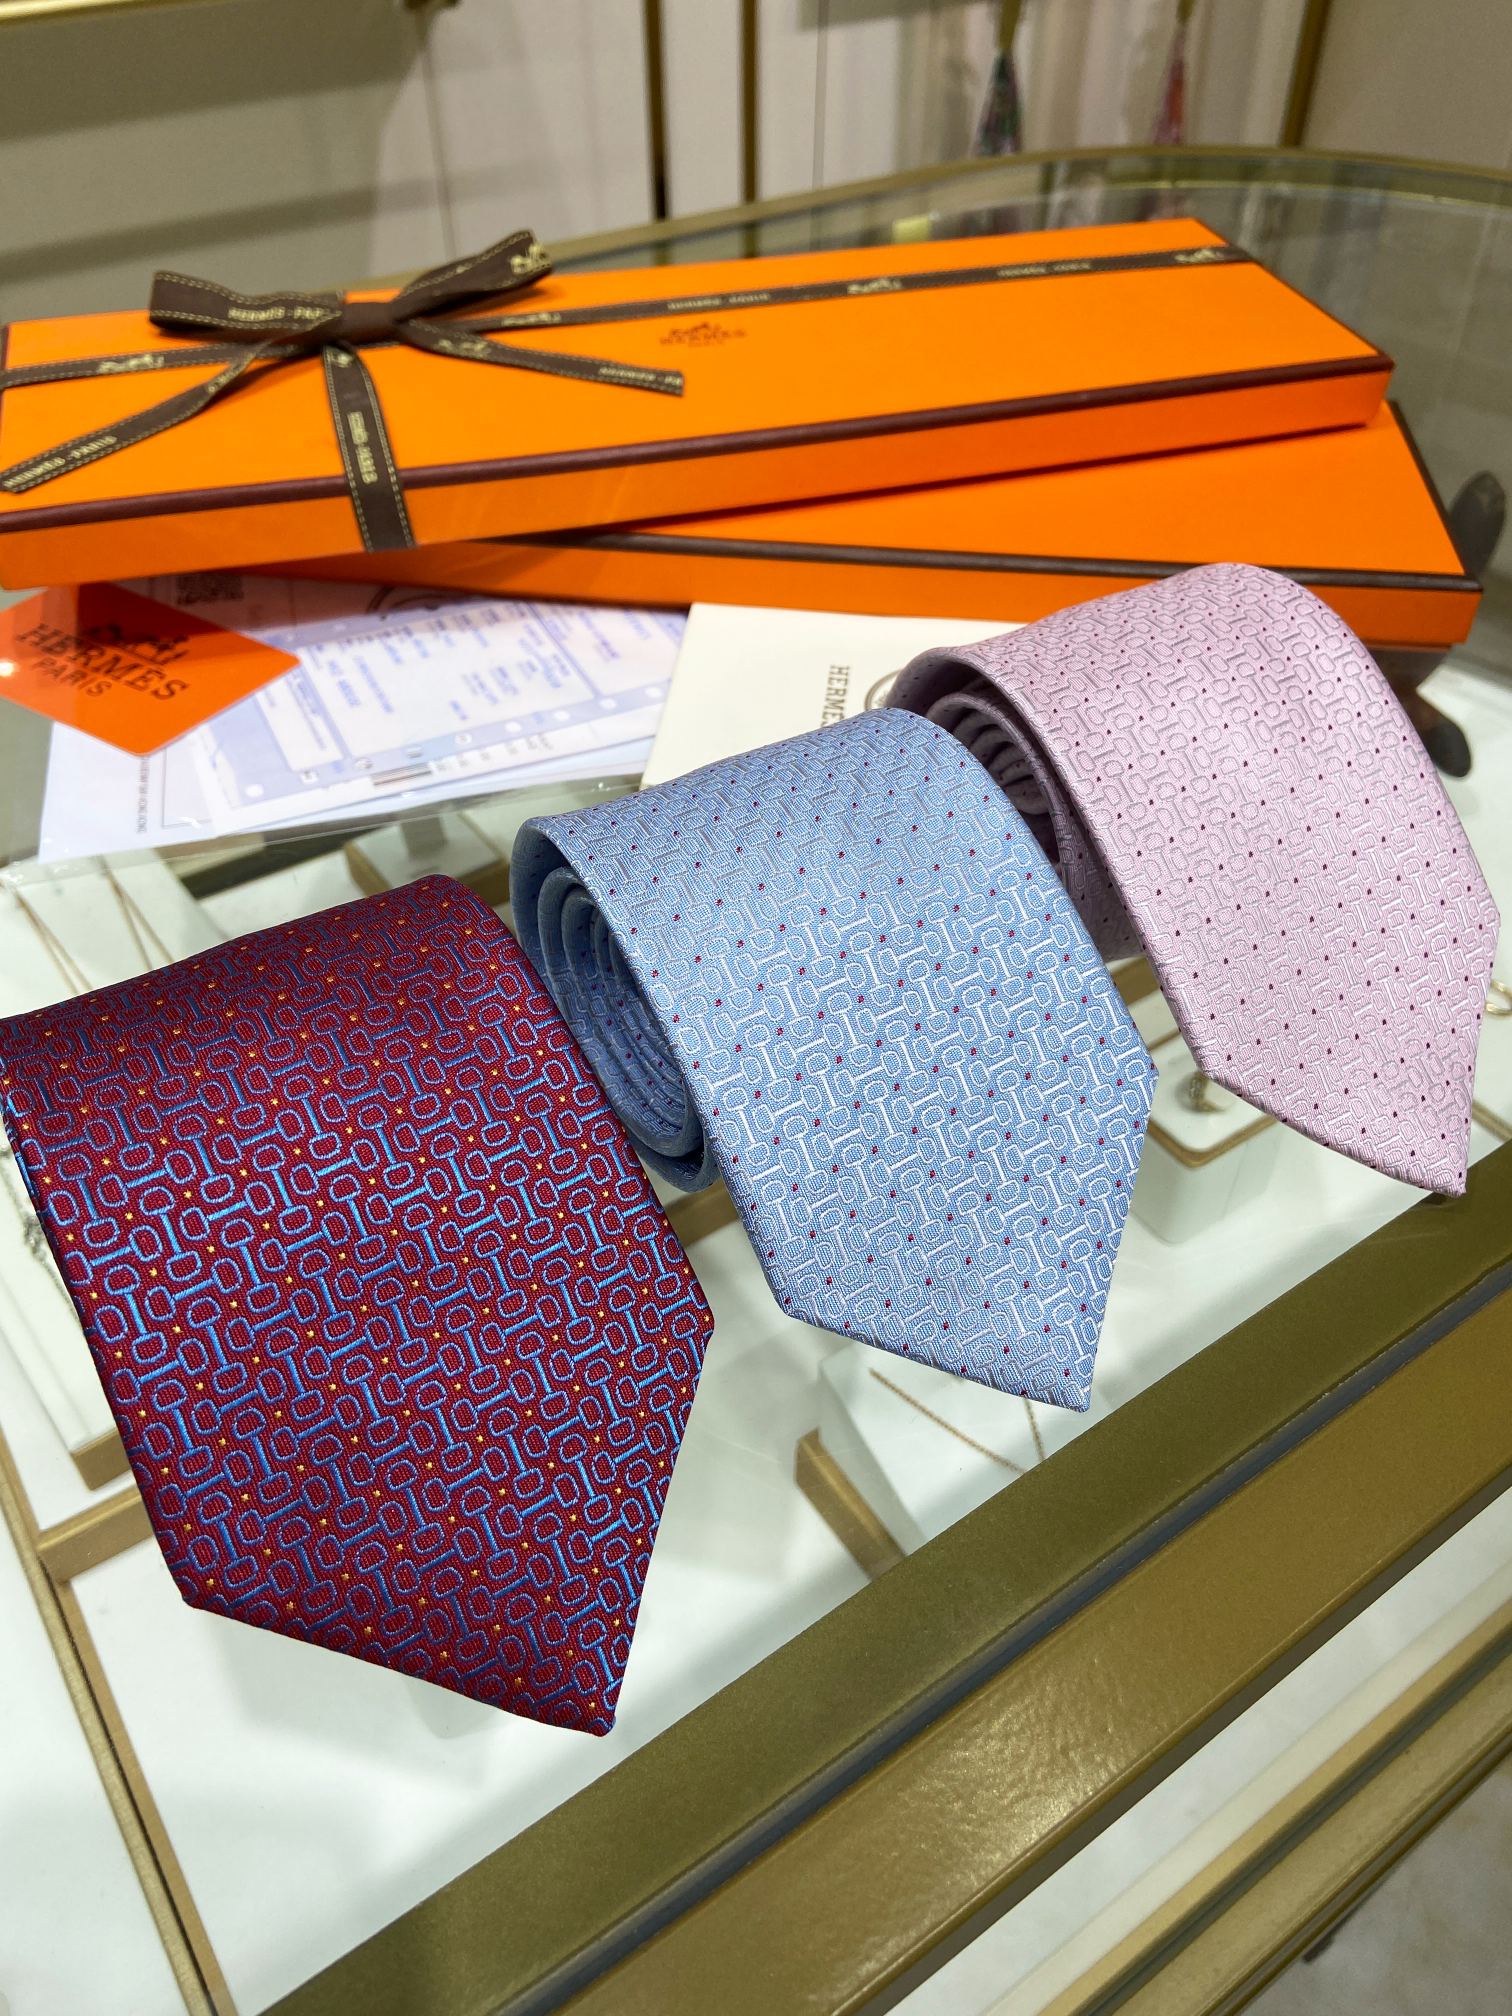 爱马仕男士新款领带系列稀有H家每年都有一千条不同印花的领带面世从最初的多以几何图案表现骑术活动为主到如今